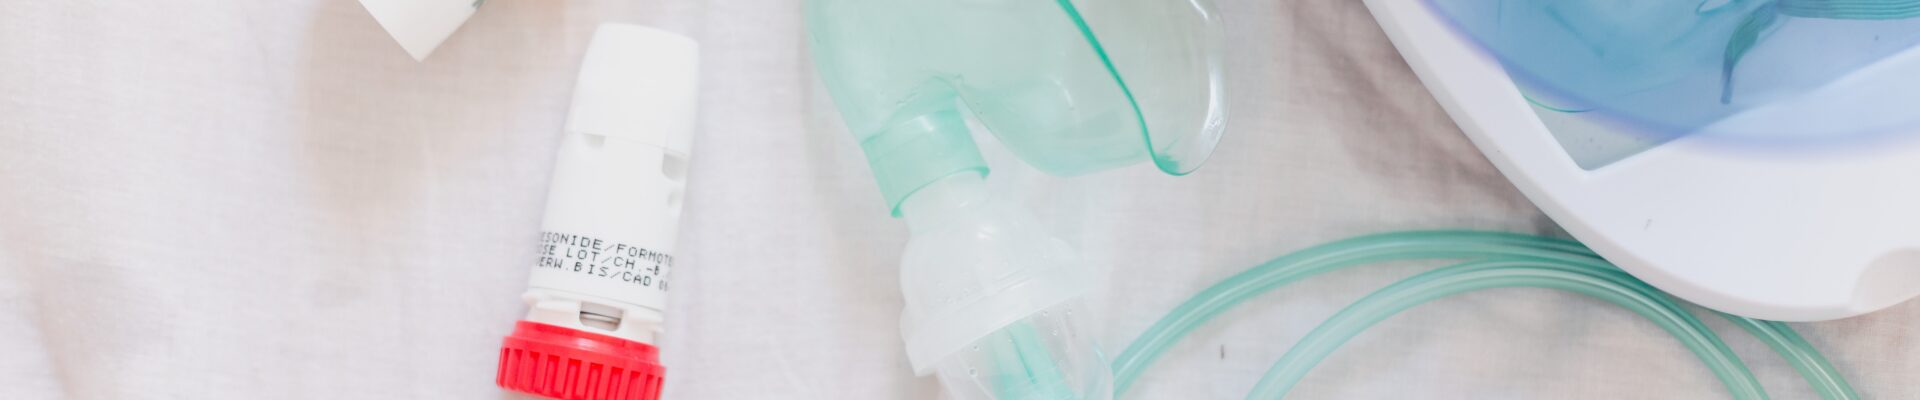 Monitoraggio dell’aderenza terapeutica nell’asma e nelle BPCO: secondo report